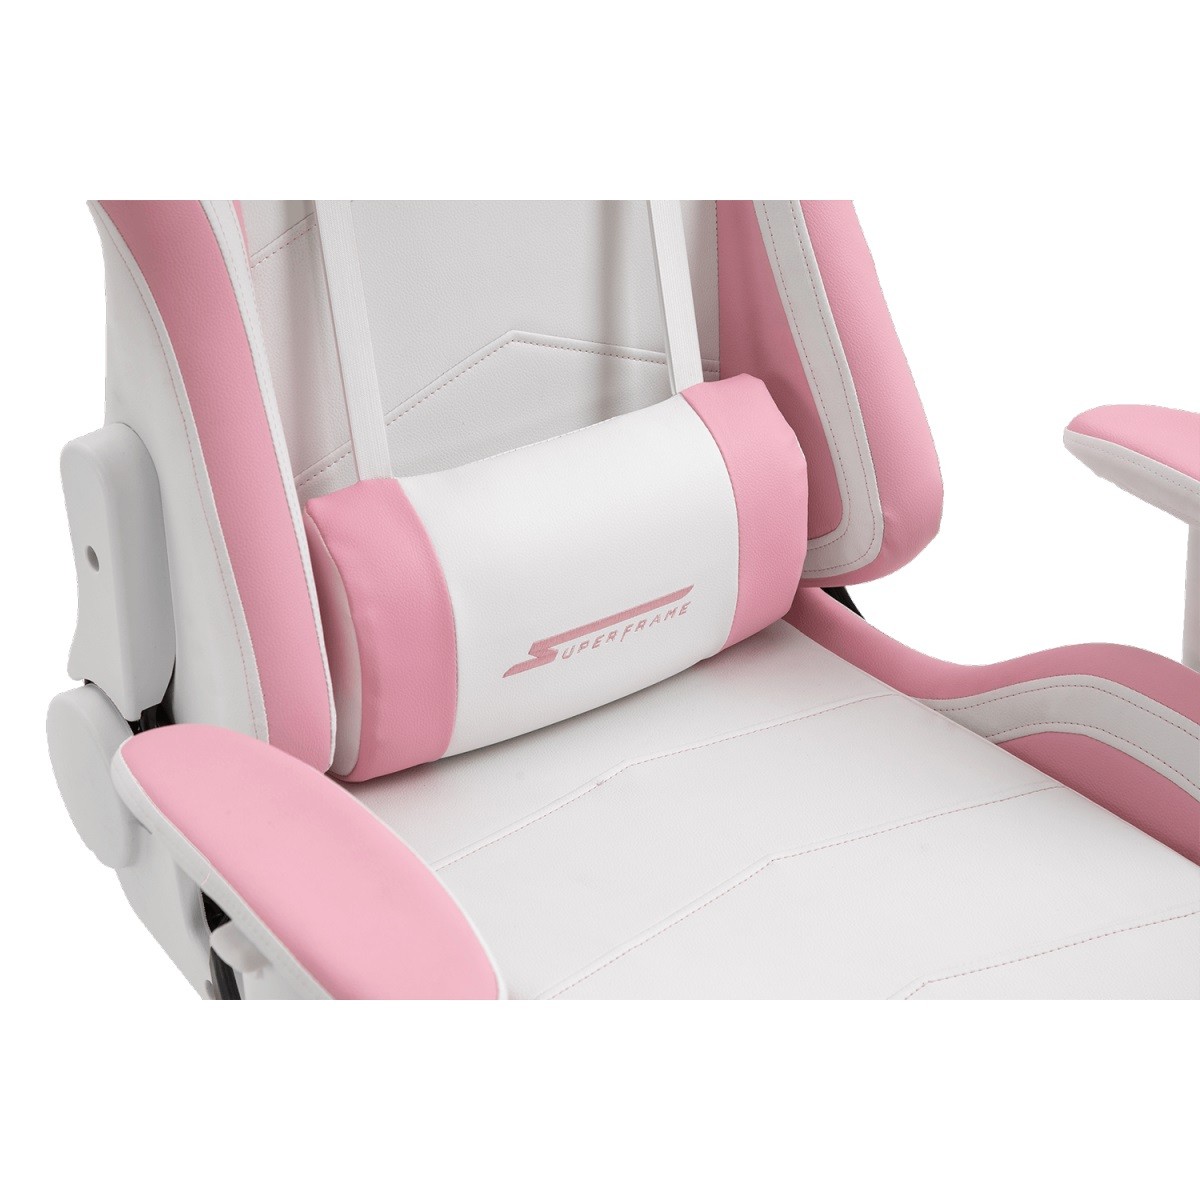 Cadeira Gamer SuperFrame Goddess, Reclinável, Suporta até 180KG, Branco e Rosa